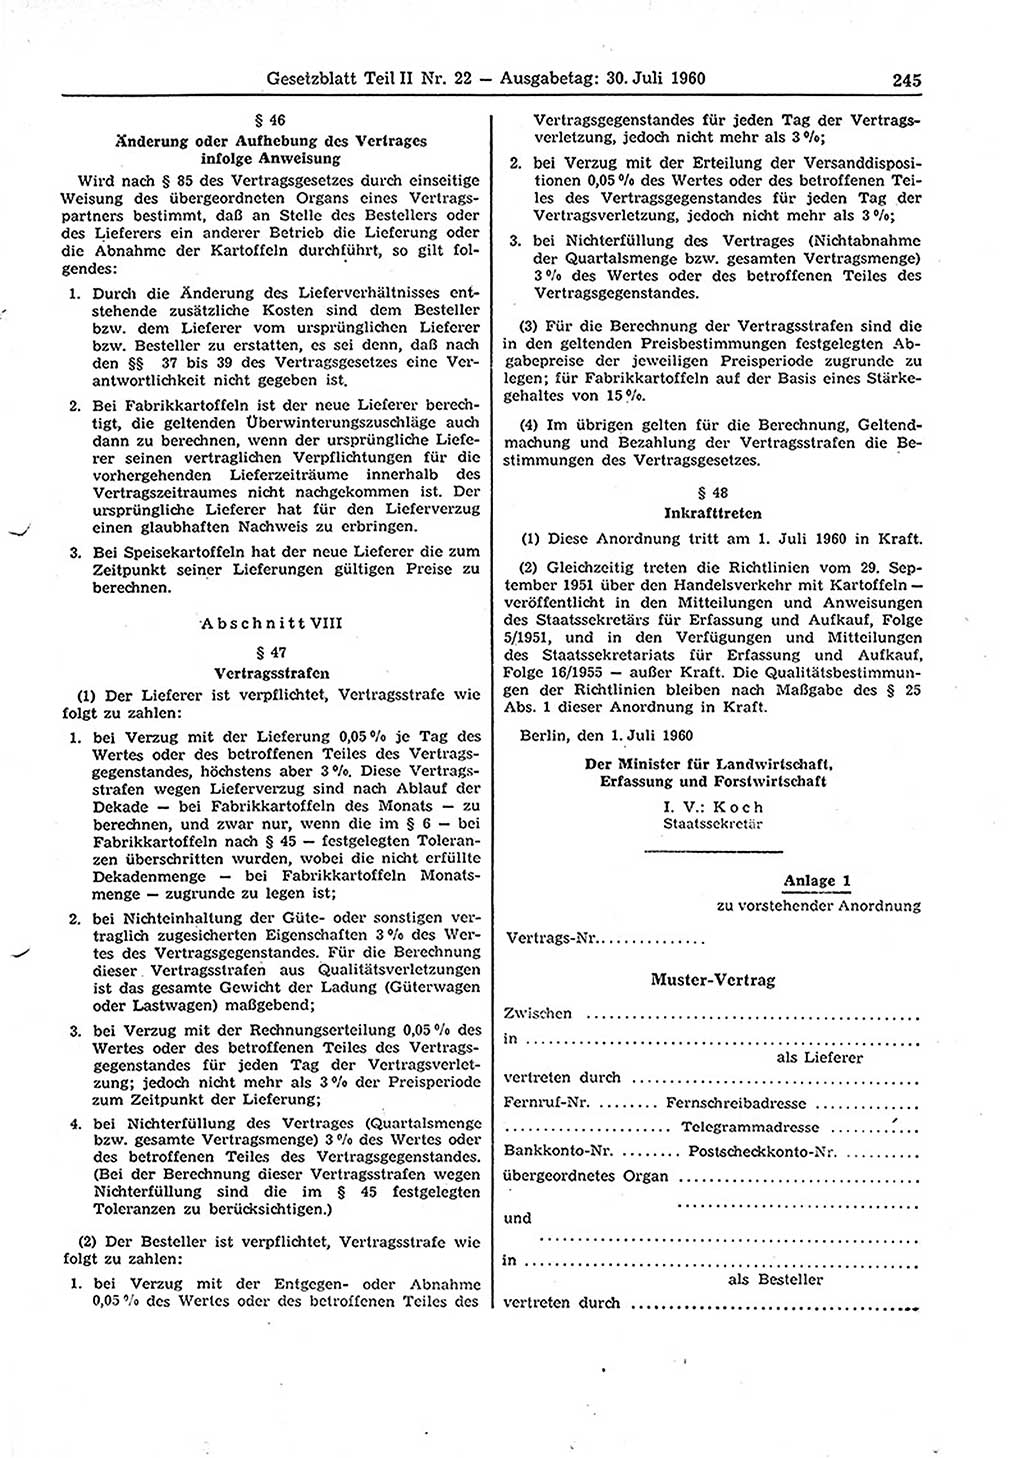 Gesetzblatt (GBl.) der Deutschen Demokratischen Republik (DDR) Teil ⅠⅠ 1960, Seite 245 (GBl. DDR ⅠⅠ 1960, S. 245)